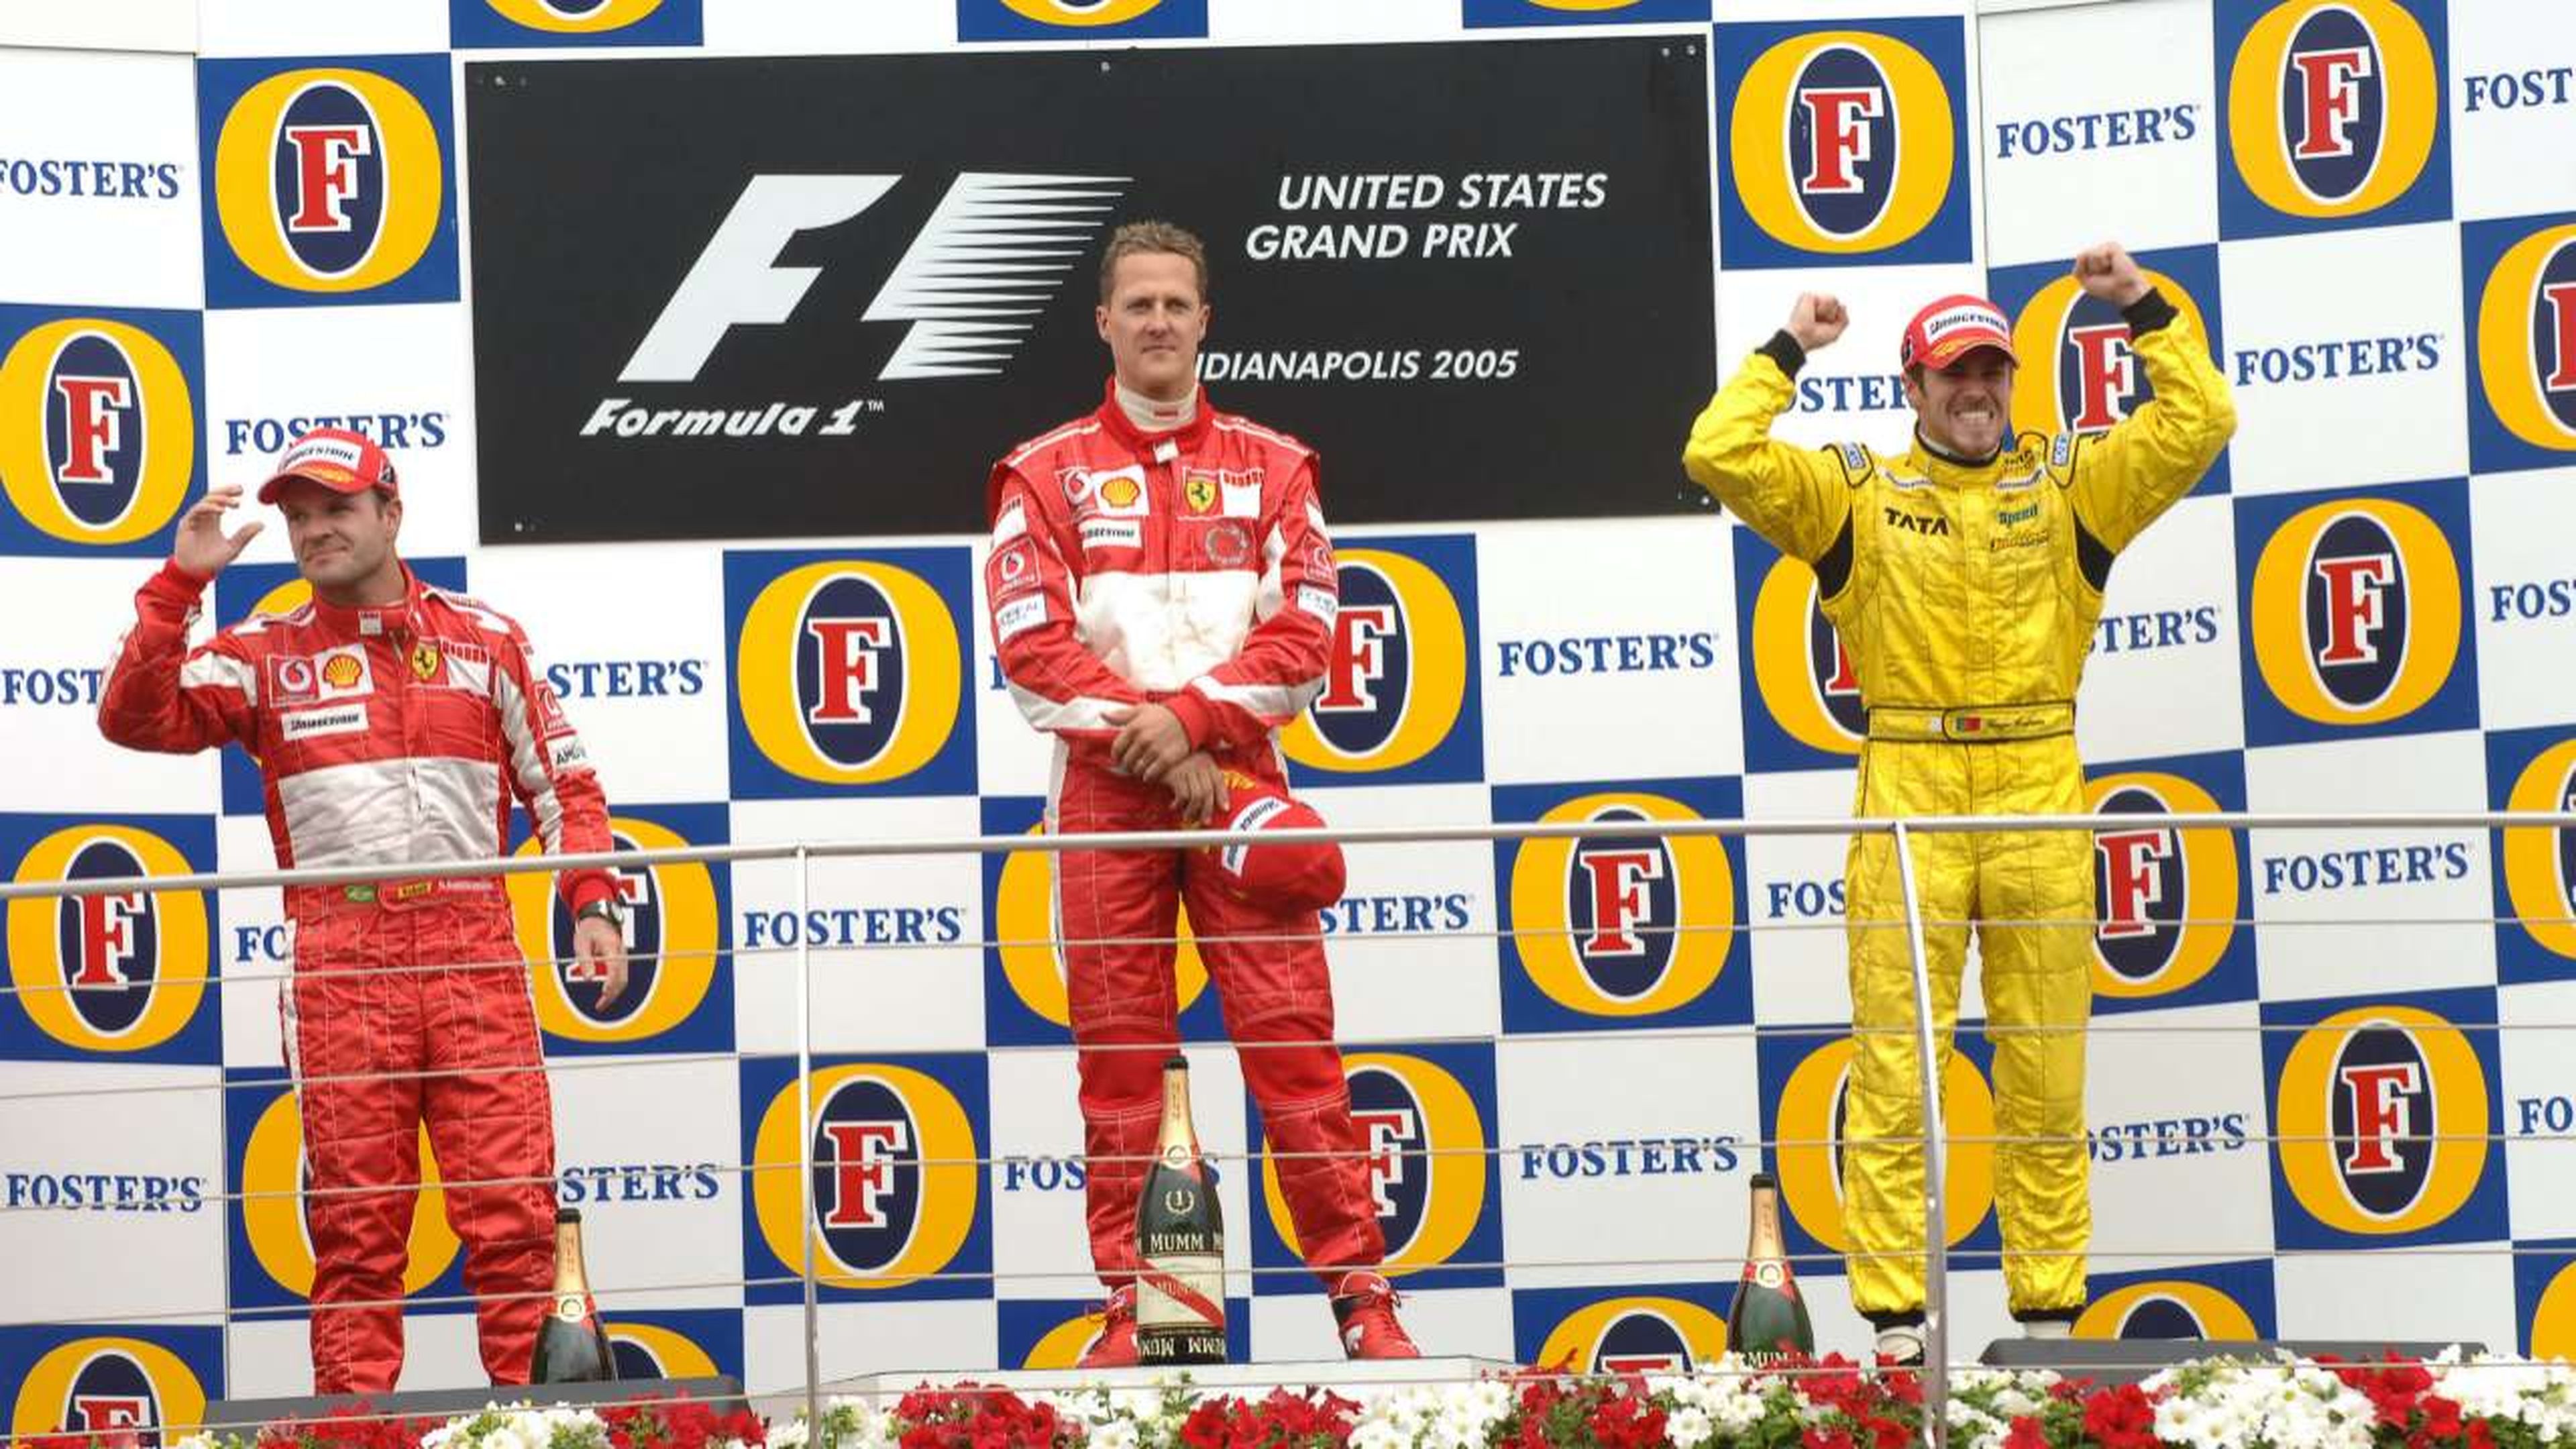 Tiago Monteiro en el podio del GP EEUU F1 2005